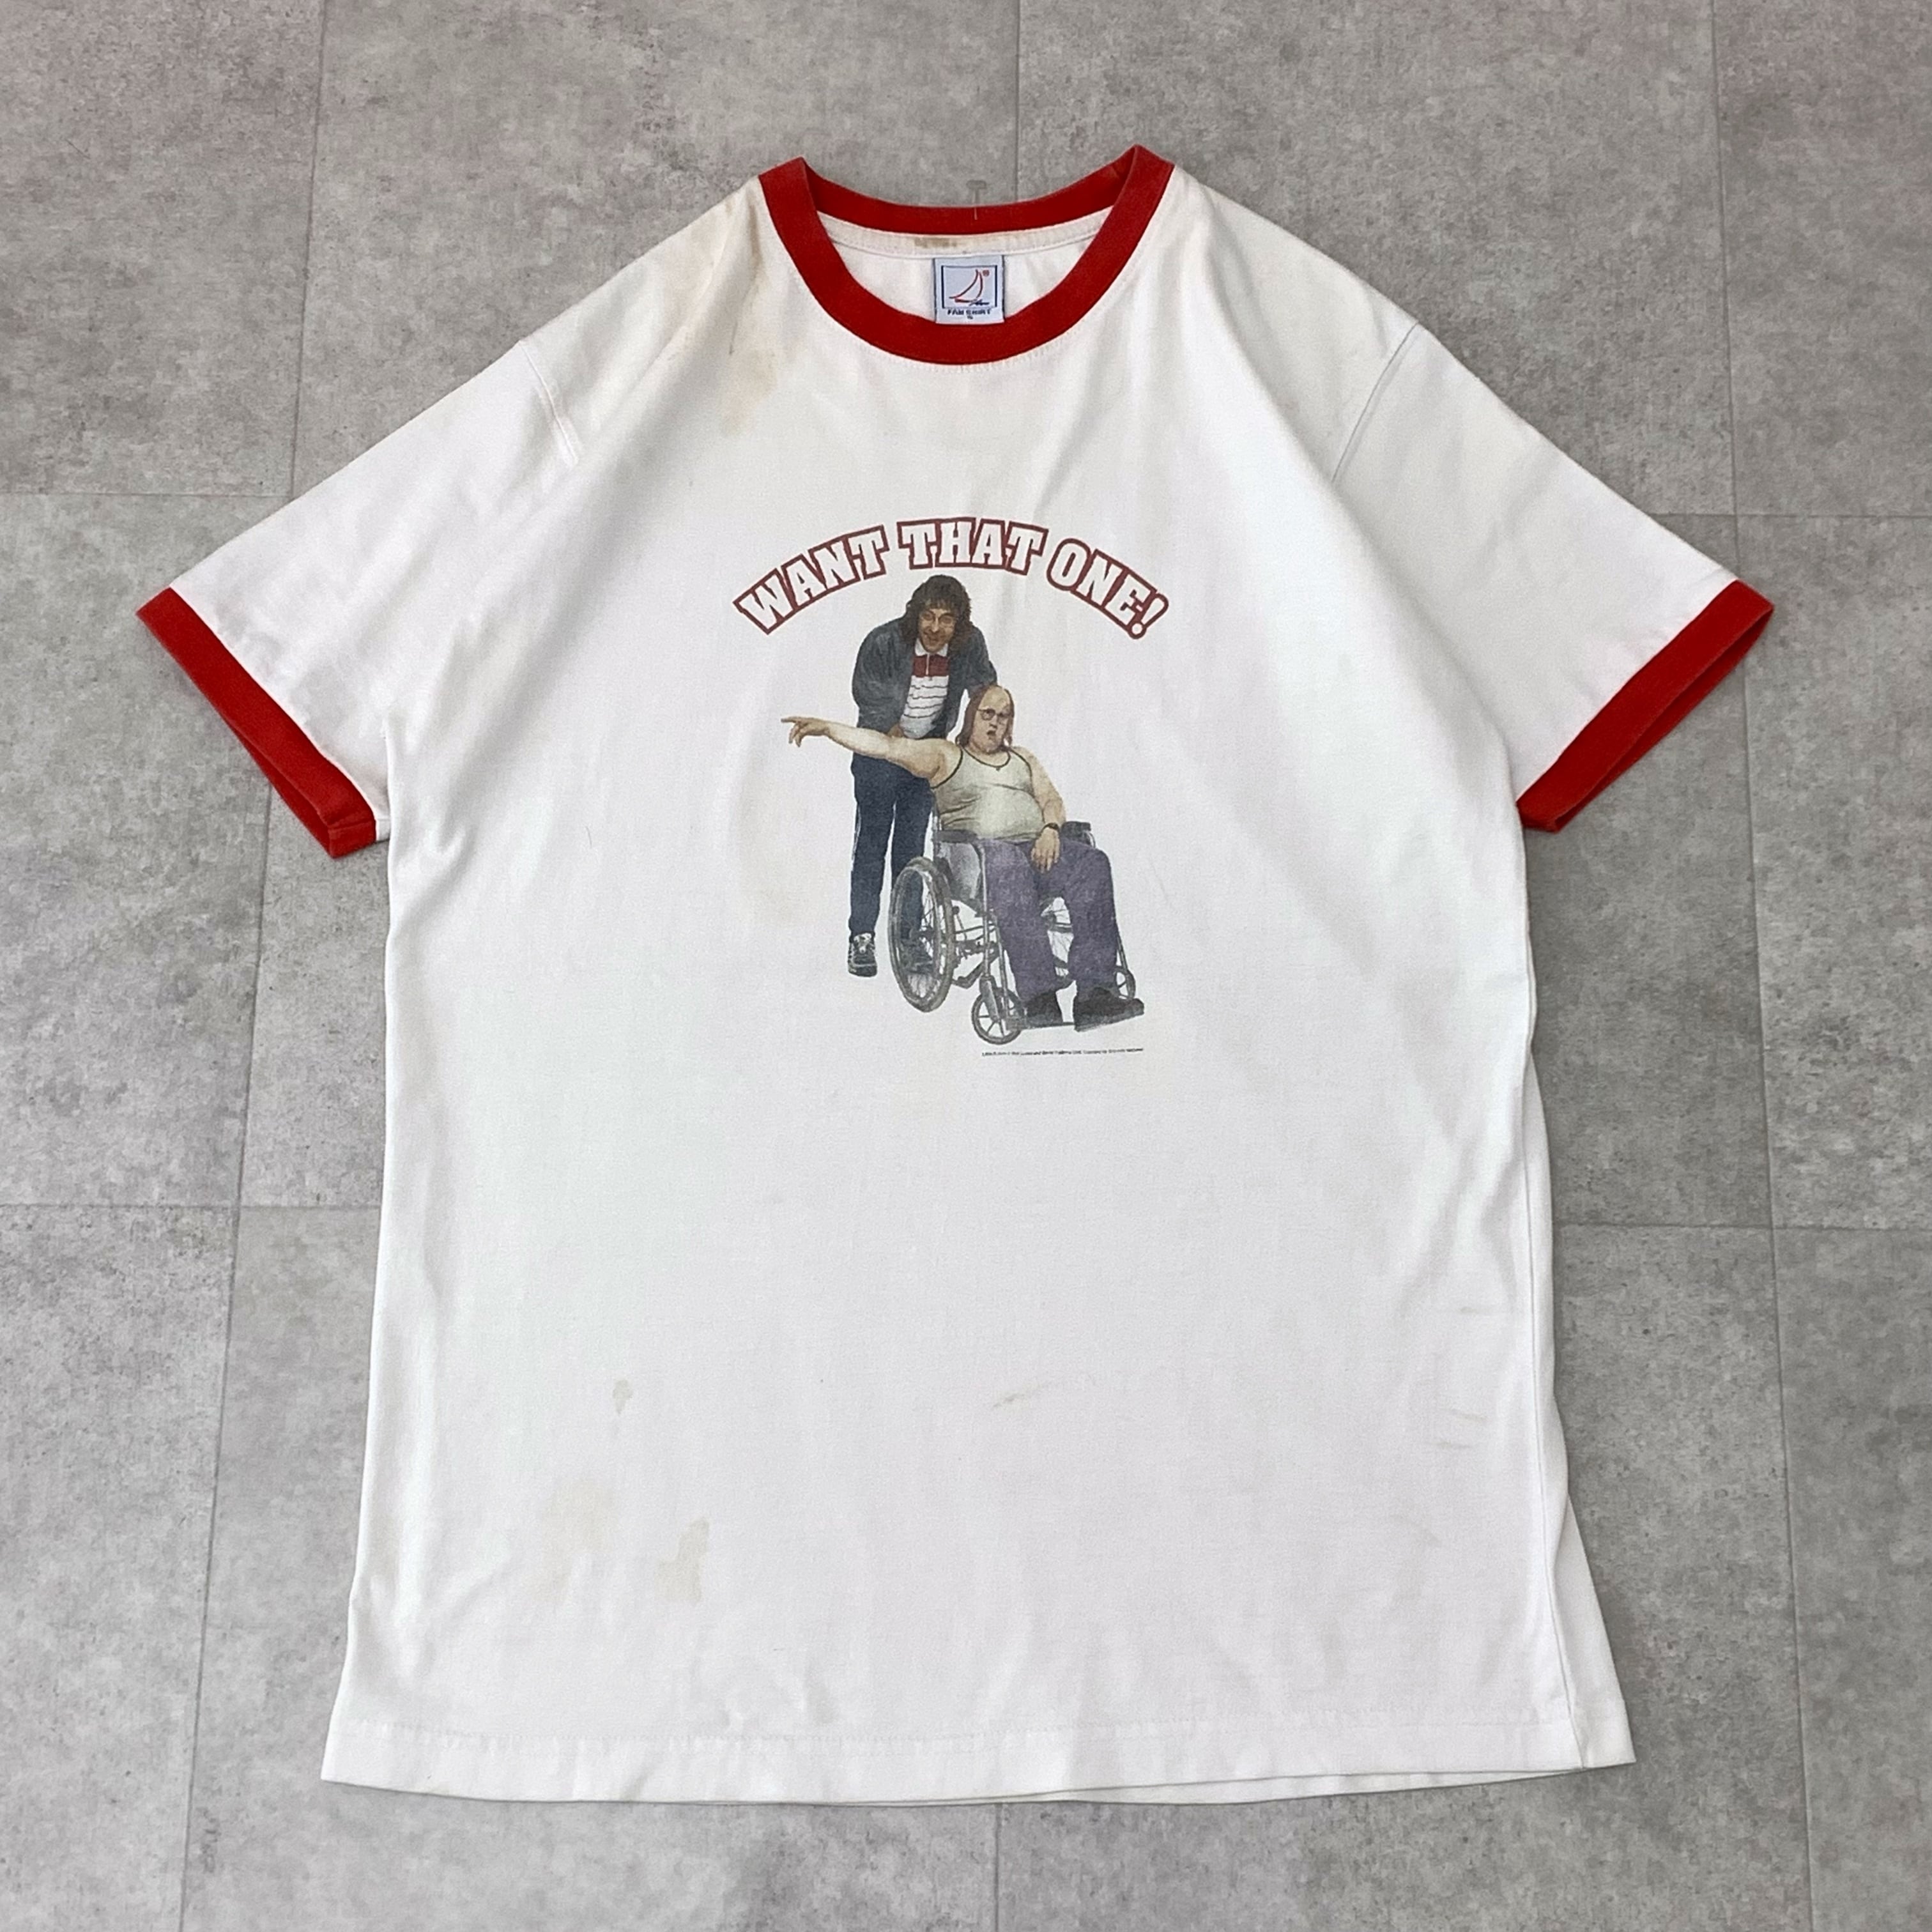 誠実】 企業 リンガーTシャツ vintage古着 90s 80s ロゴ 白 赤 Tシャツ